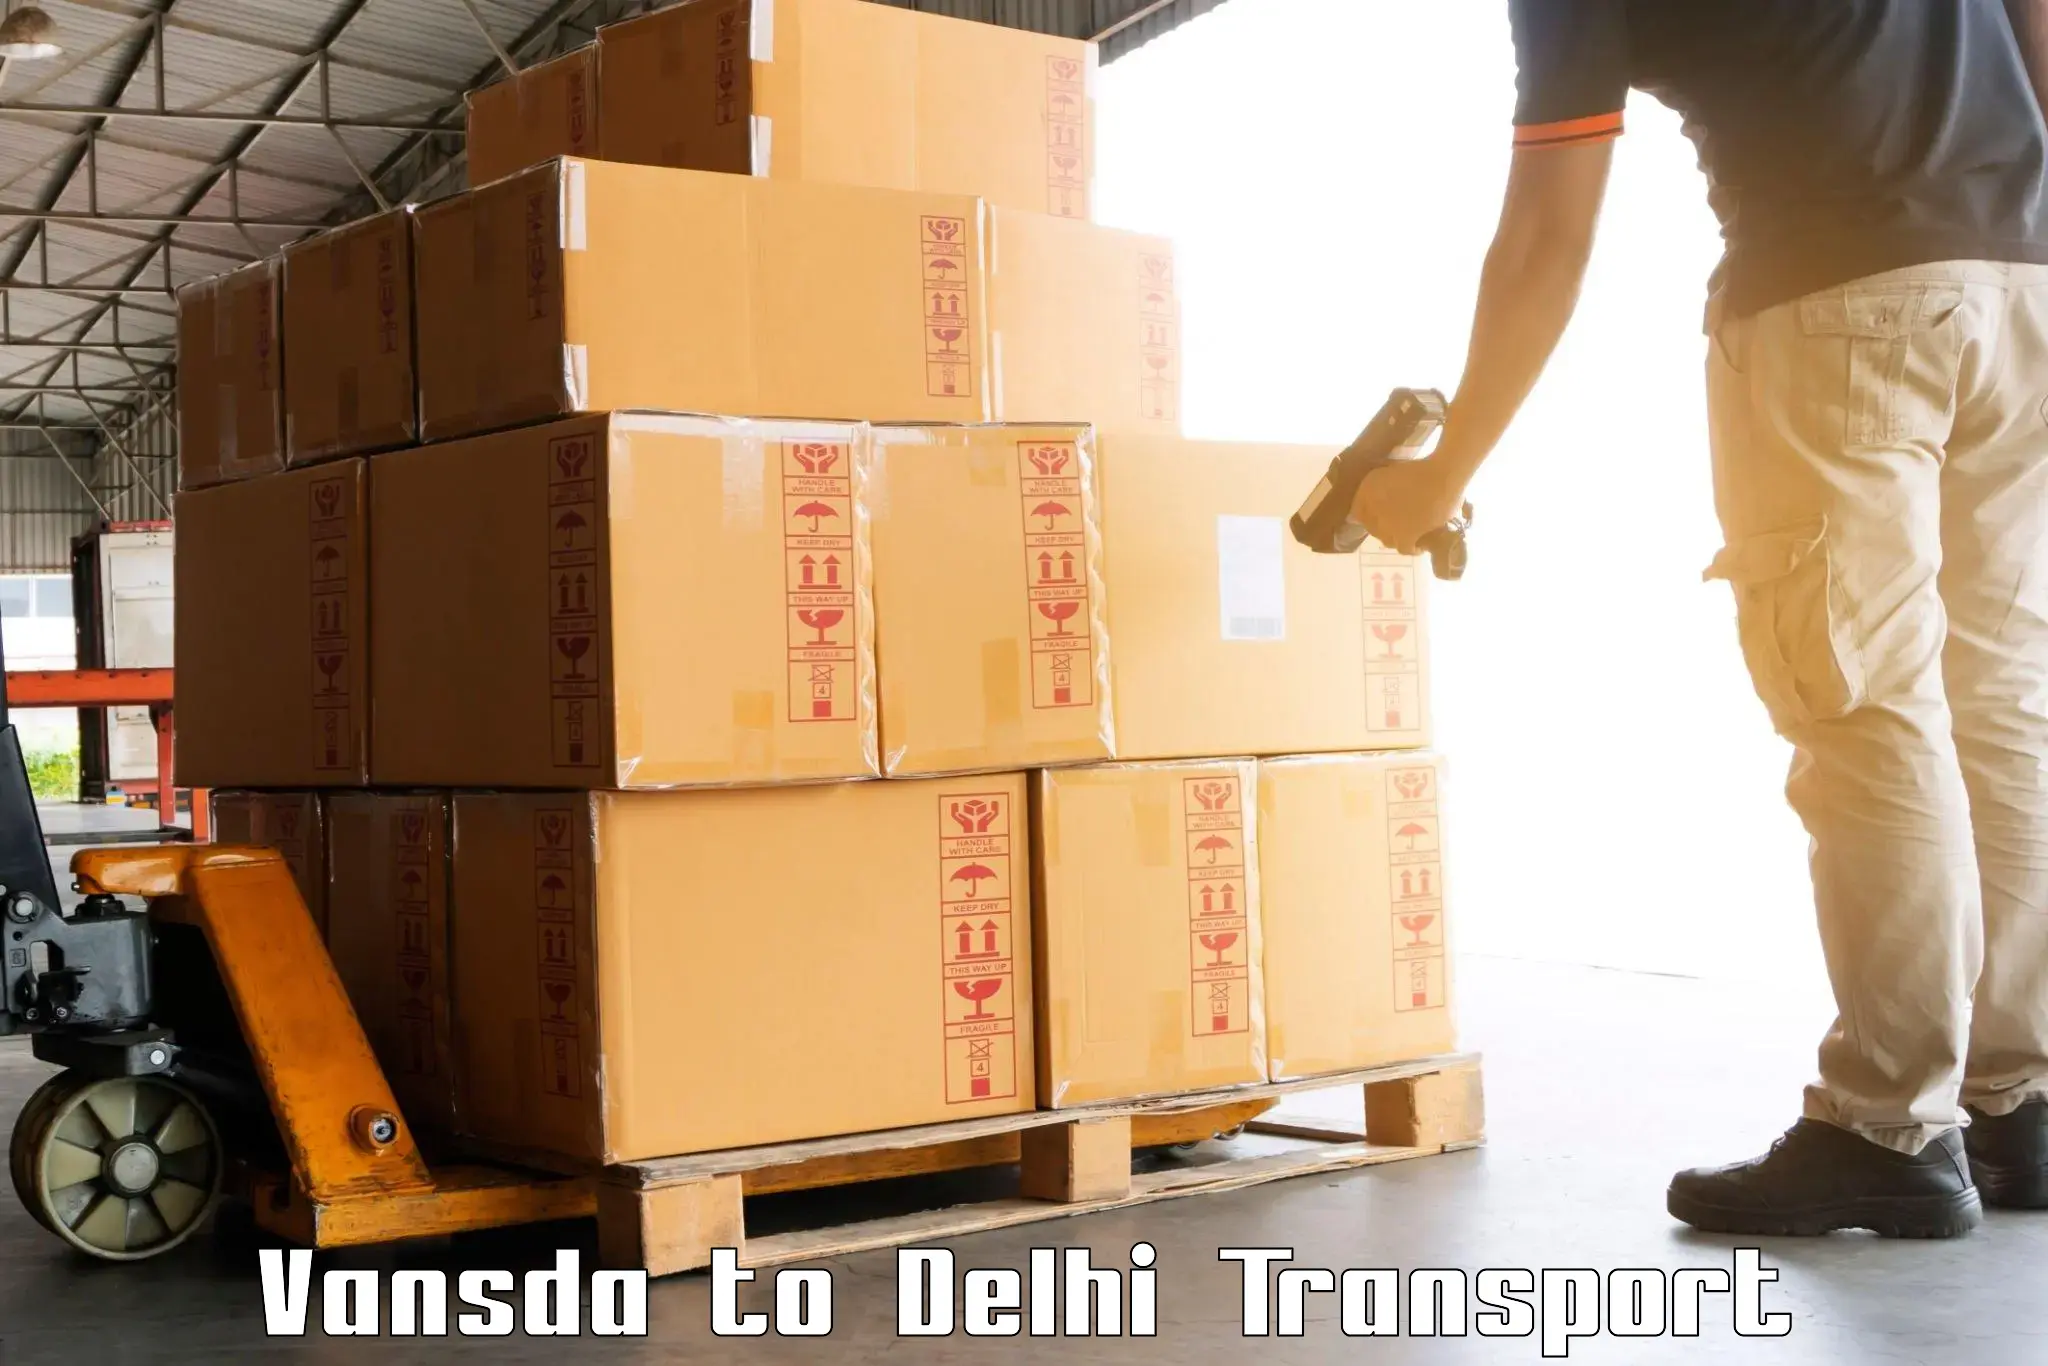 Transport in sharing Vansda to Sarojini Nagar